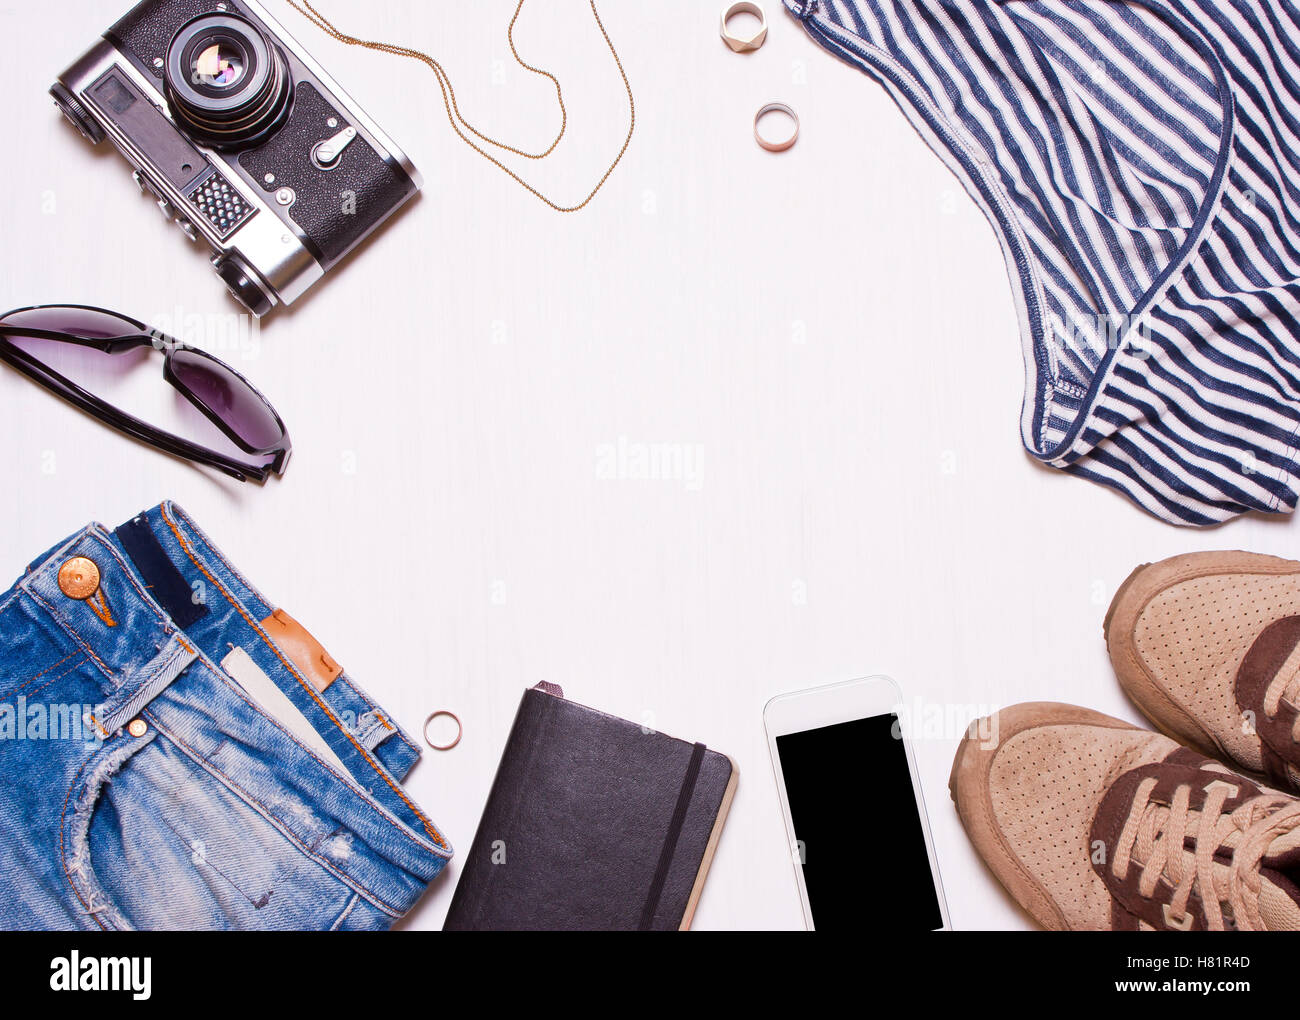 Collage di donna, uomo accessori abbigliamento.jeans, t-shirt, occhiali da sole, vintage fotocamera, telefono, sneakers su un bianco Foto Stock